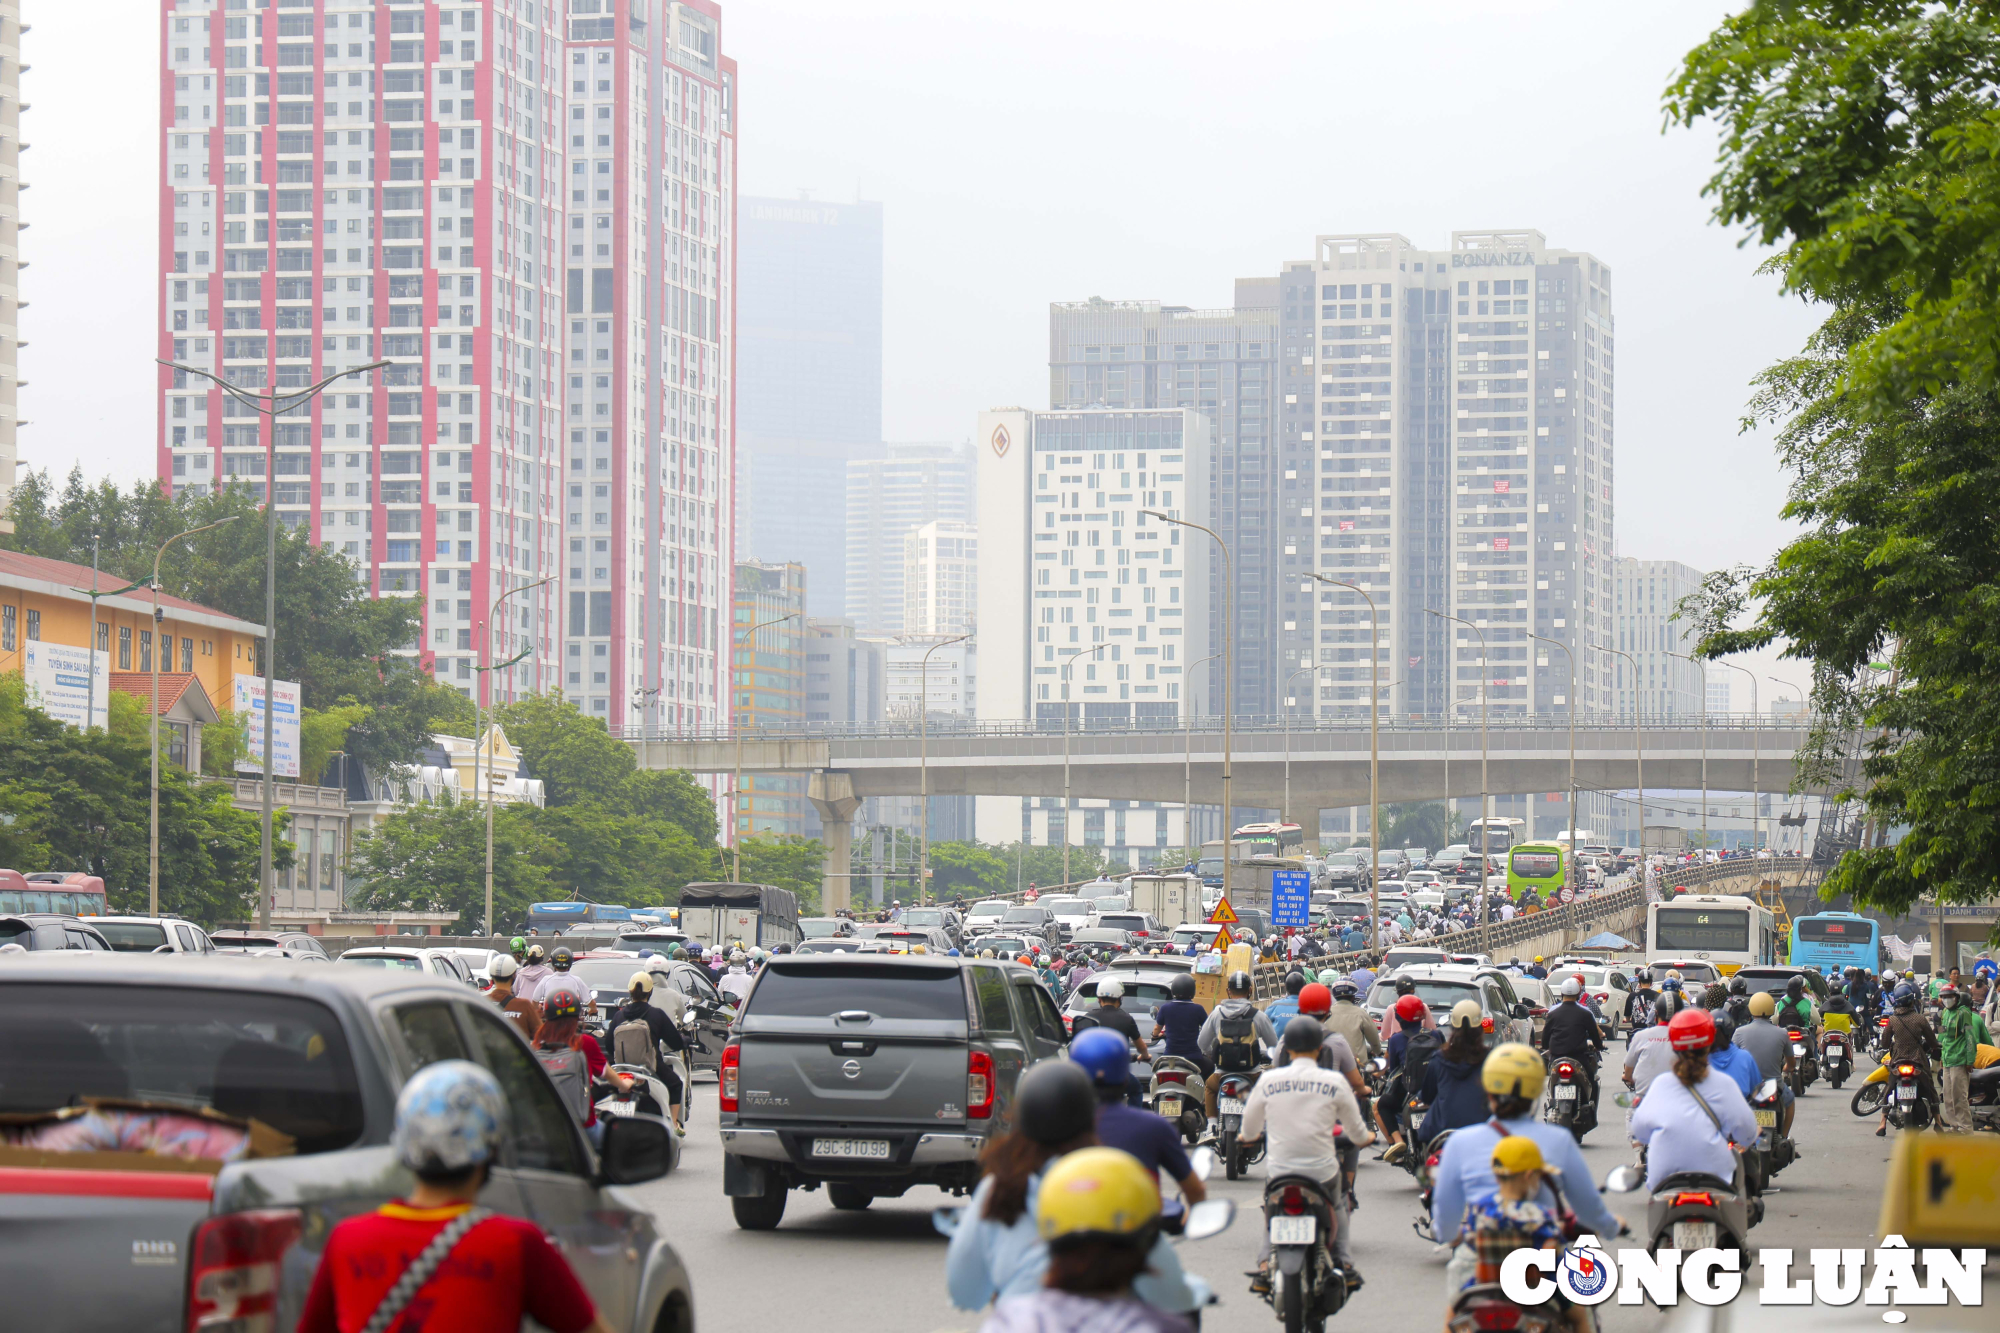 Vào khoảng 7h15’ sáng 4/5, nhiều tuyến đường hướng vào nội thành Thủ đô Hà Nội đã xảy ra ùn tắc, hàng vạn phương tiện đổ ra đường.

